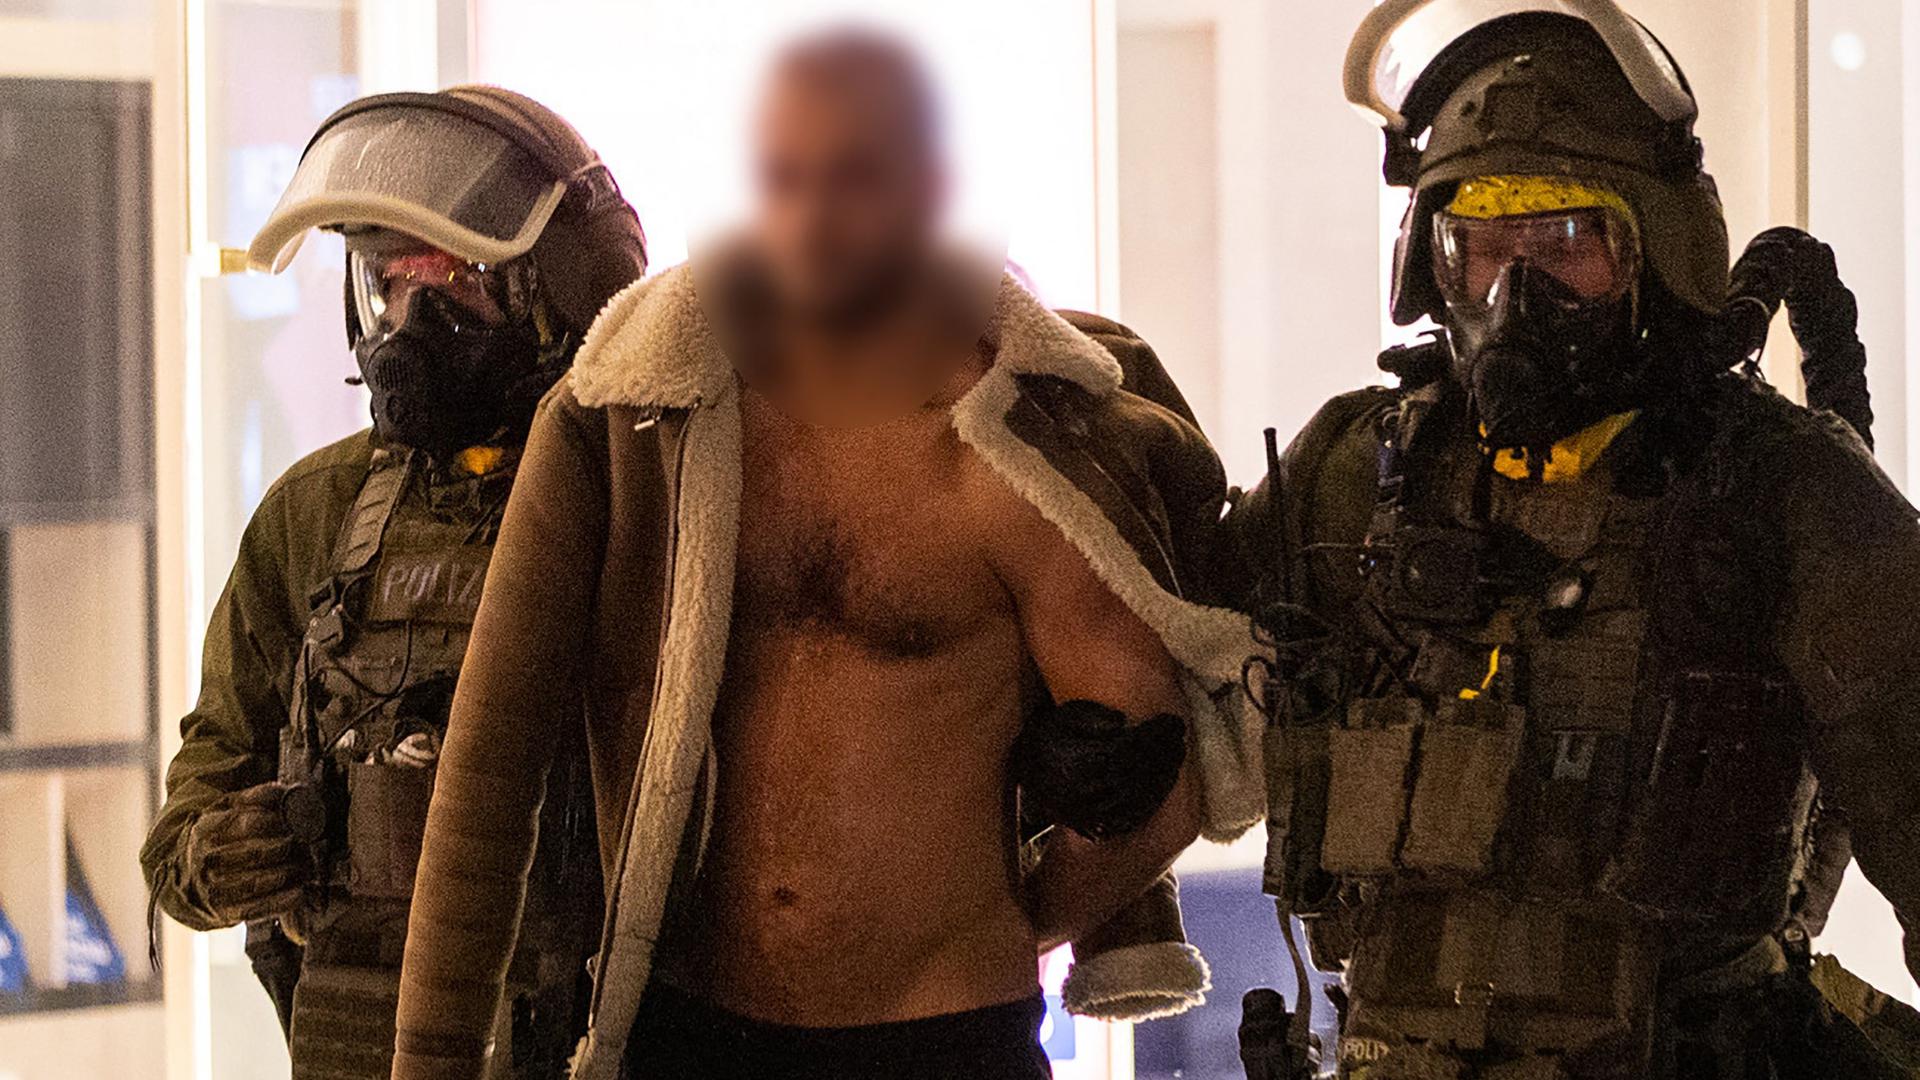 O momento da detenção do suspeito, ontem à noite em sua casa, pelas forças policiais na Renânia do Norte-Vestefália.